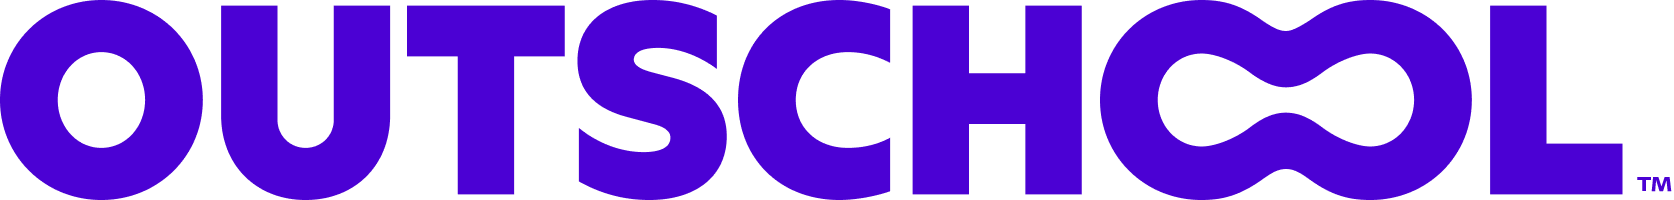 Outschool_Logo_Color-1